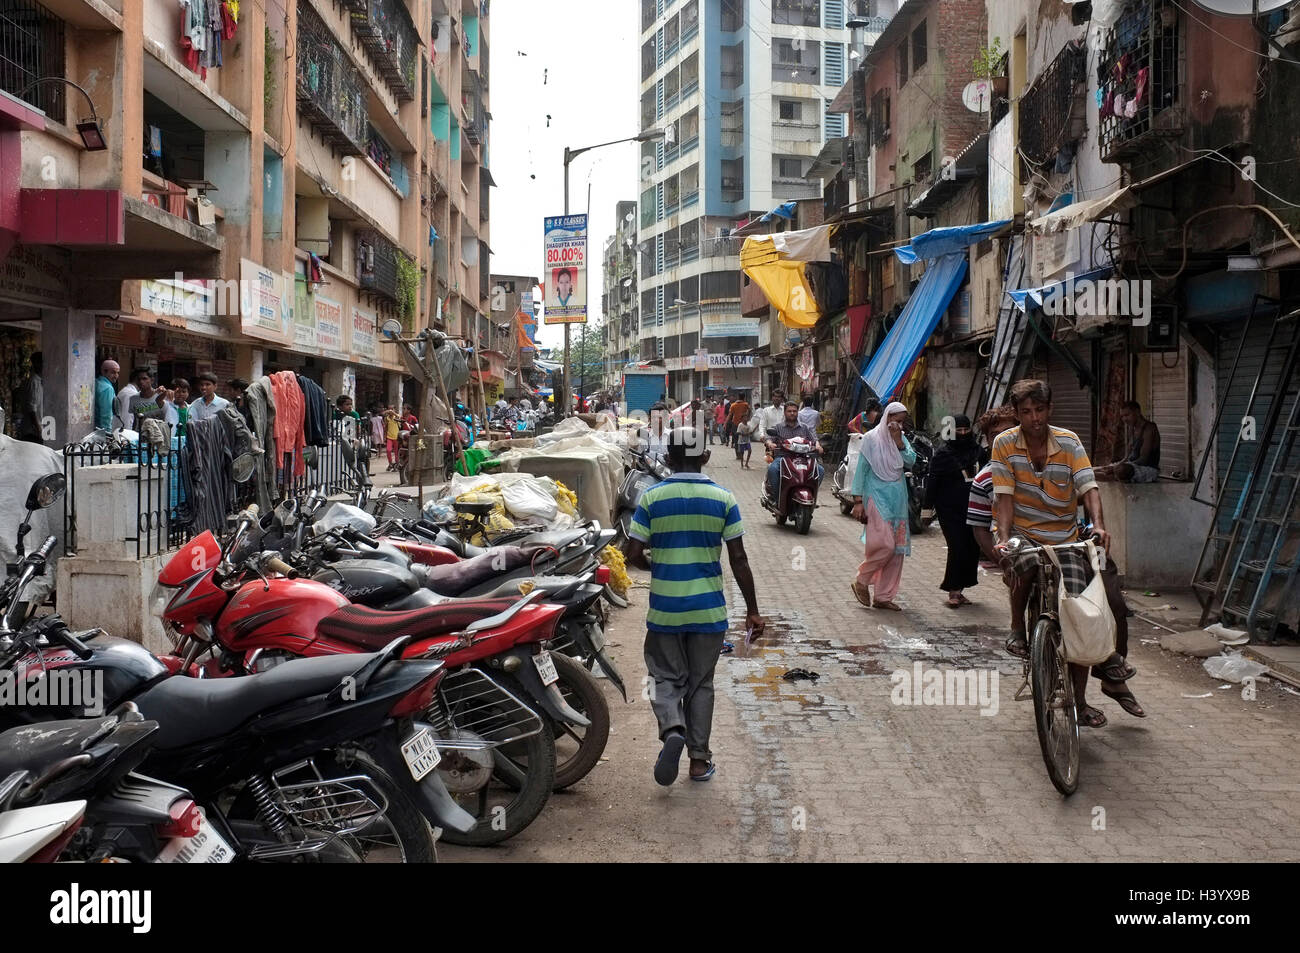 Moto parcheggiata sulla strada e le persone che si recano sulle loro attività quotidiane. Scene di strada dharavi, Mumbai, India Foto Stock